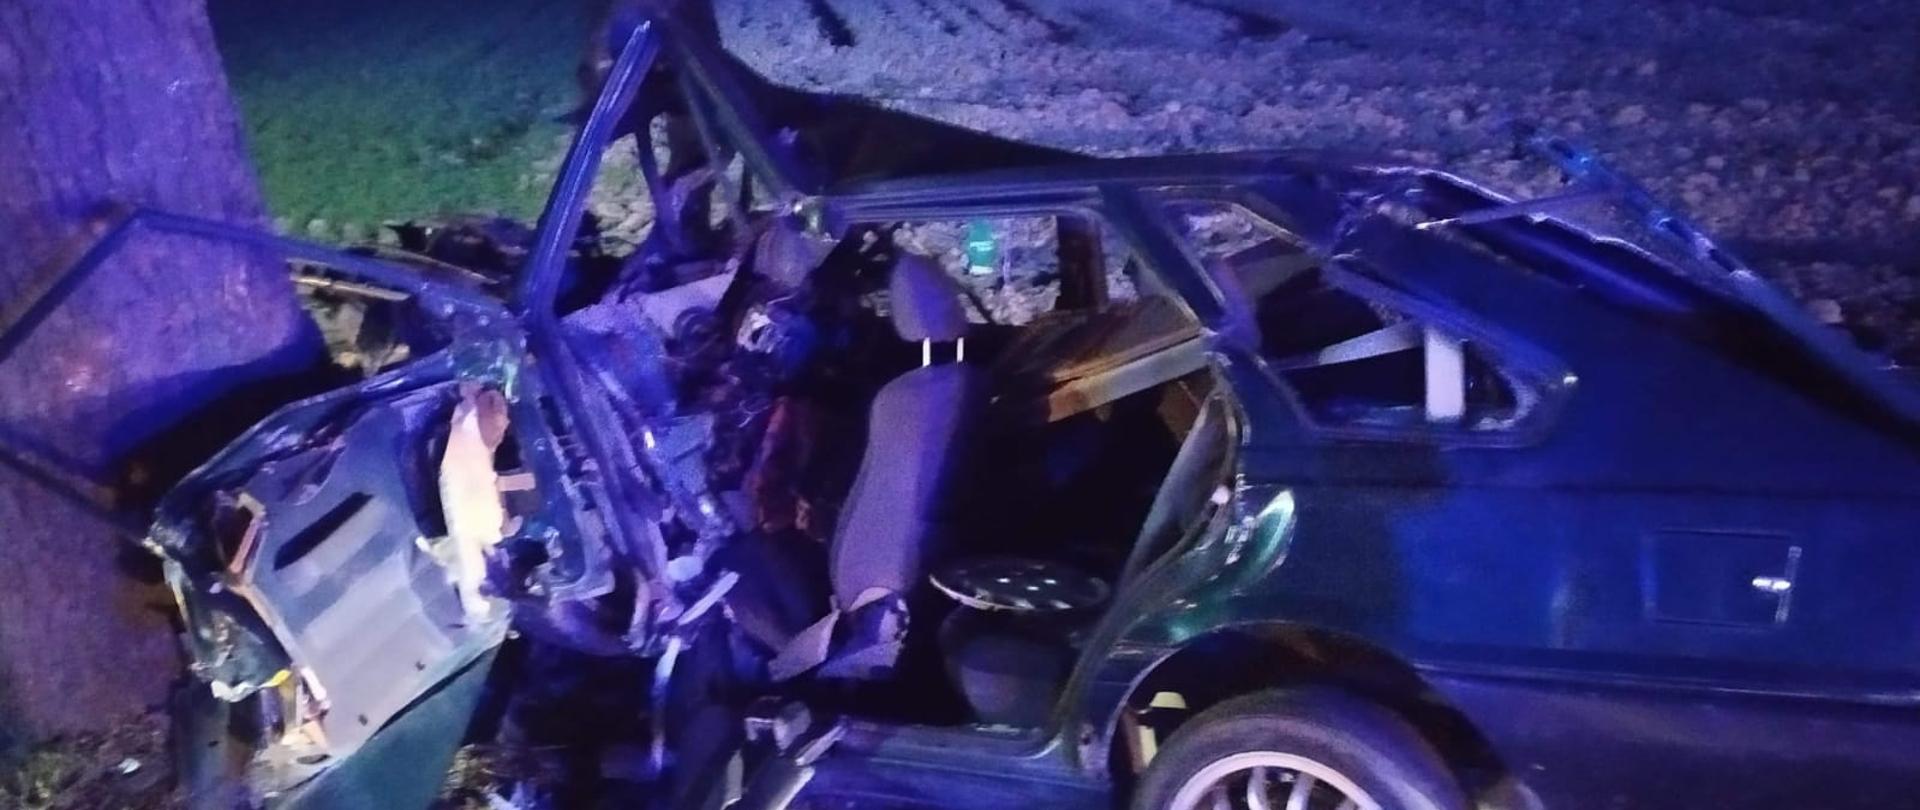 Widać uszkodzony samochód, który przodem uderzył w drzewo, bok od kierowcy uszkodzony